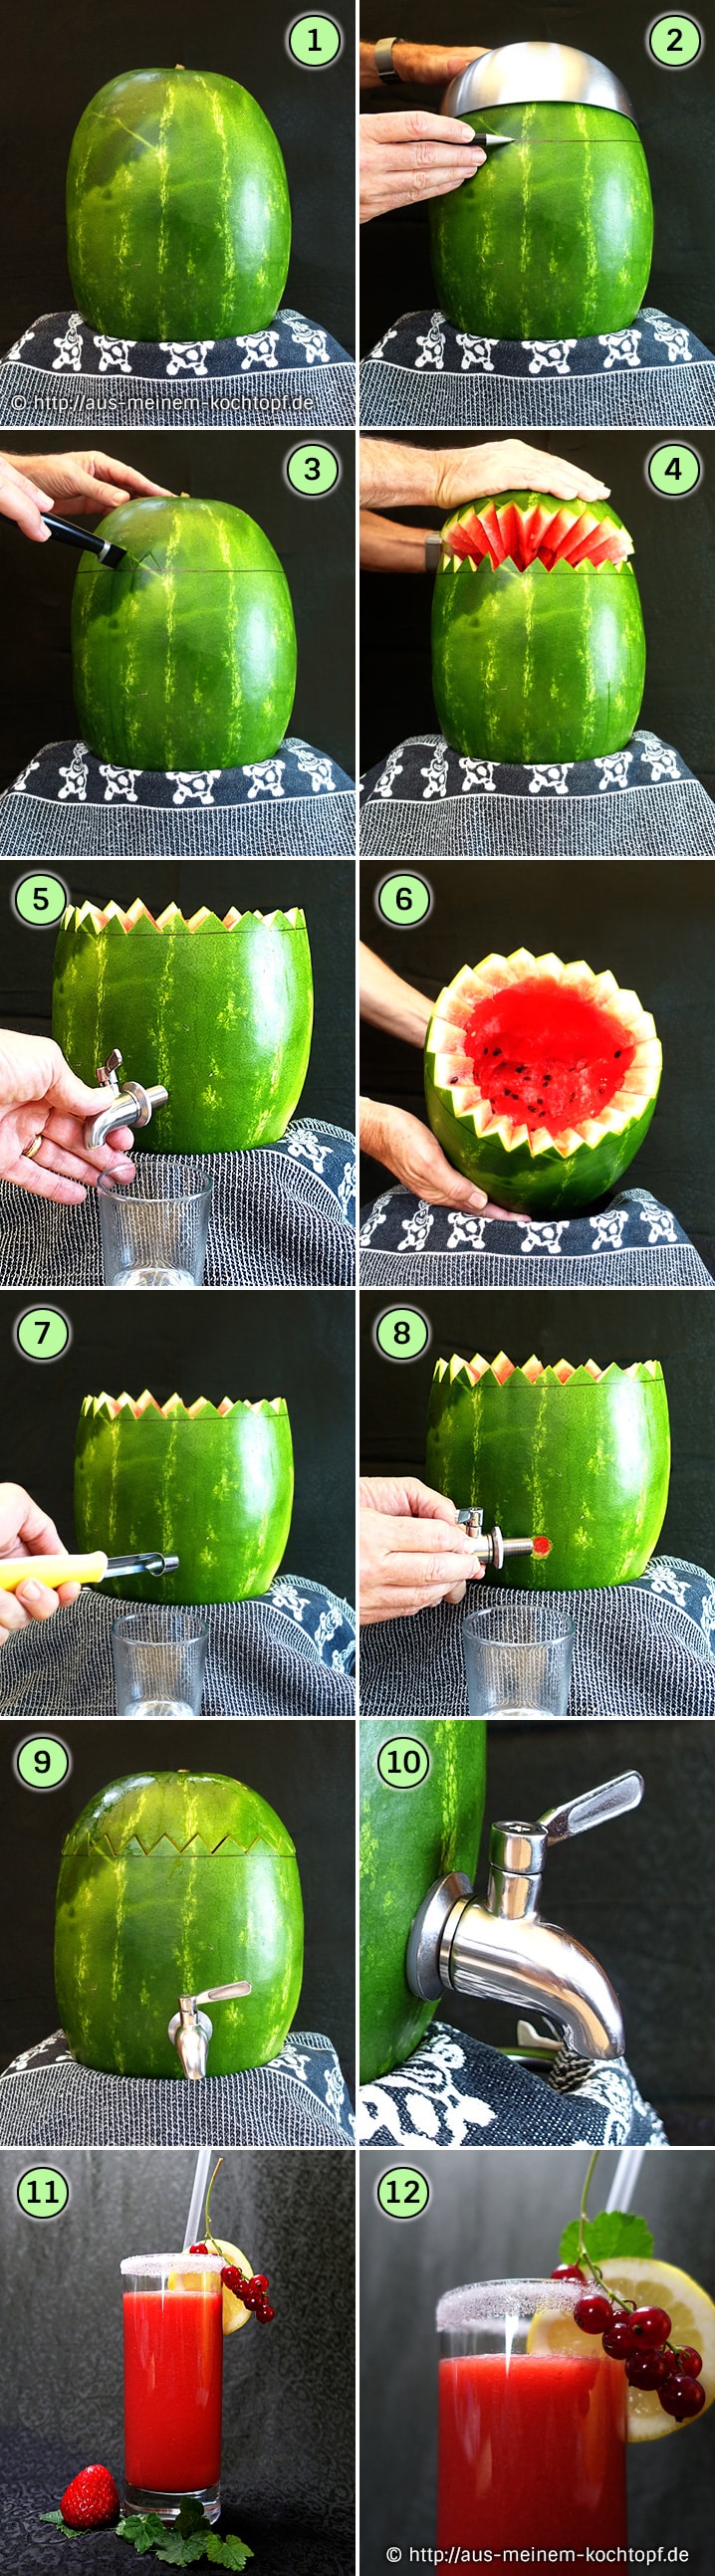 Tropen-Smoothie - Wassermelonen Smoothie